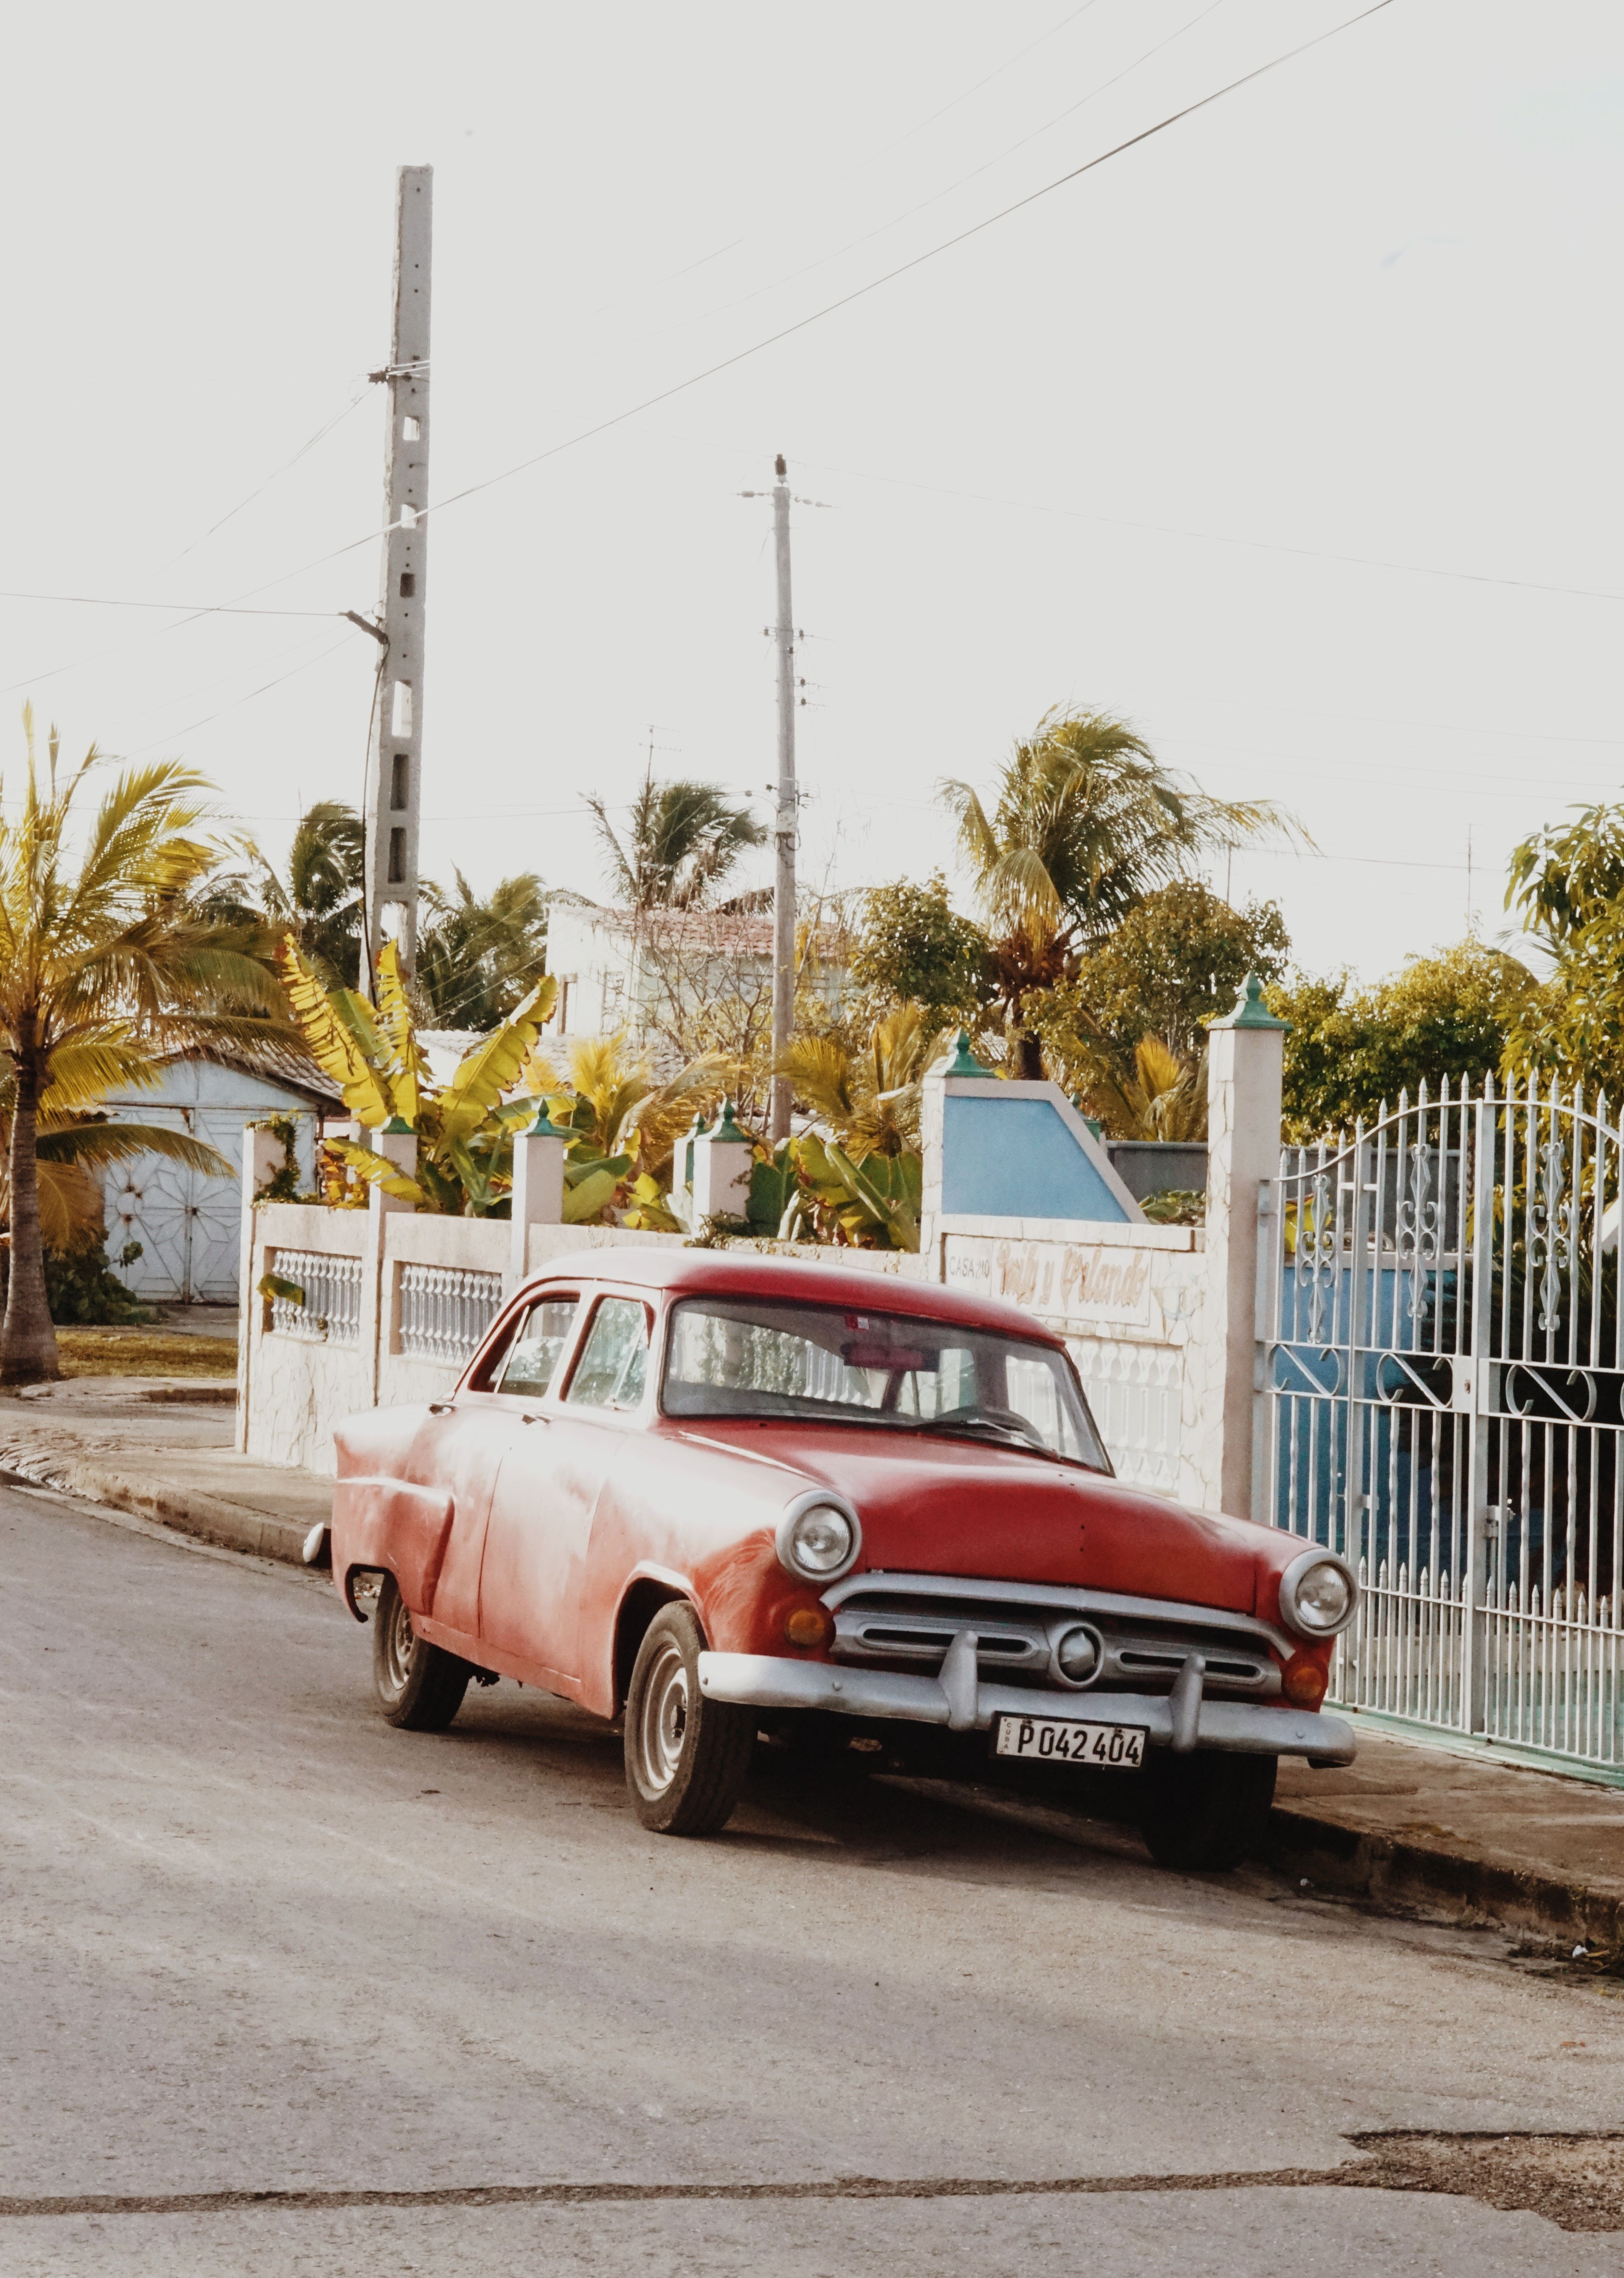  The Streets Of Varadero, Cuba